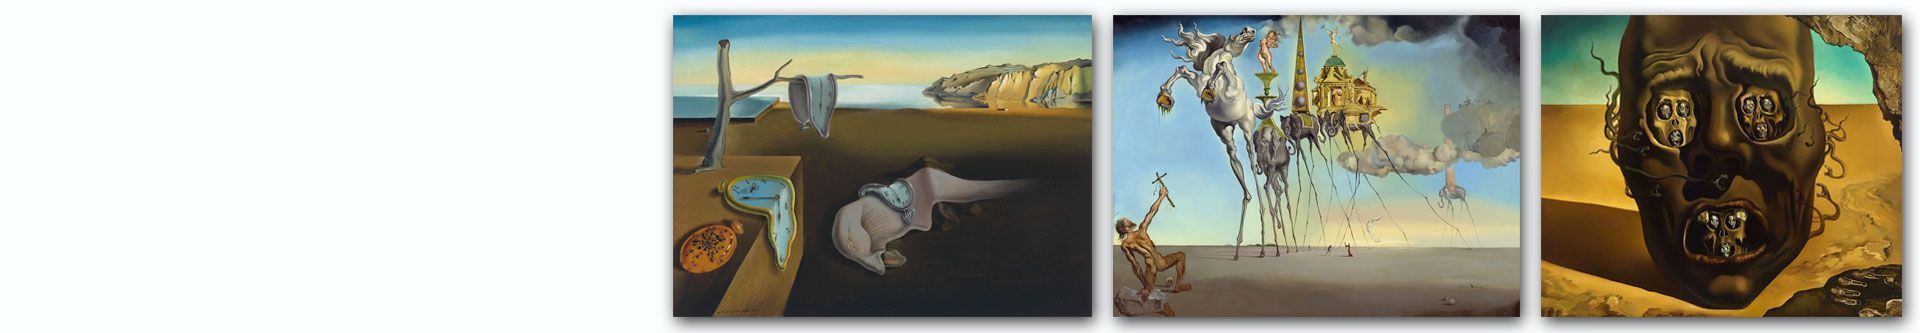 Obrazy Salvadora Dali na płótnie, najsłynniejsze obrazy surrealistyczne - sklep Grafiki Obrazy